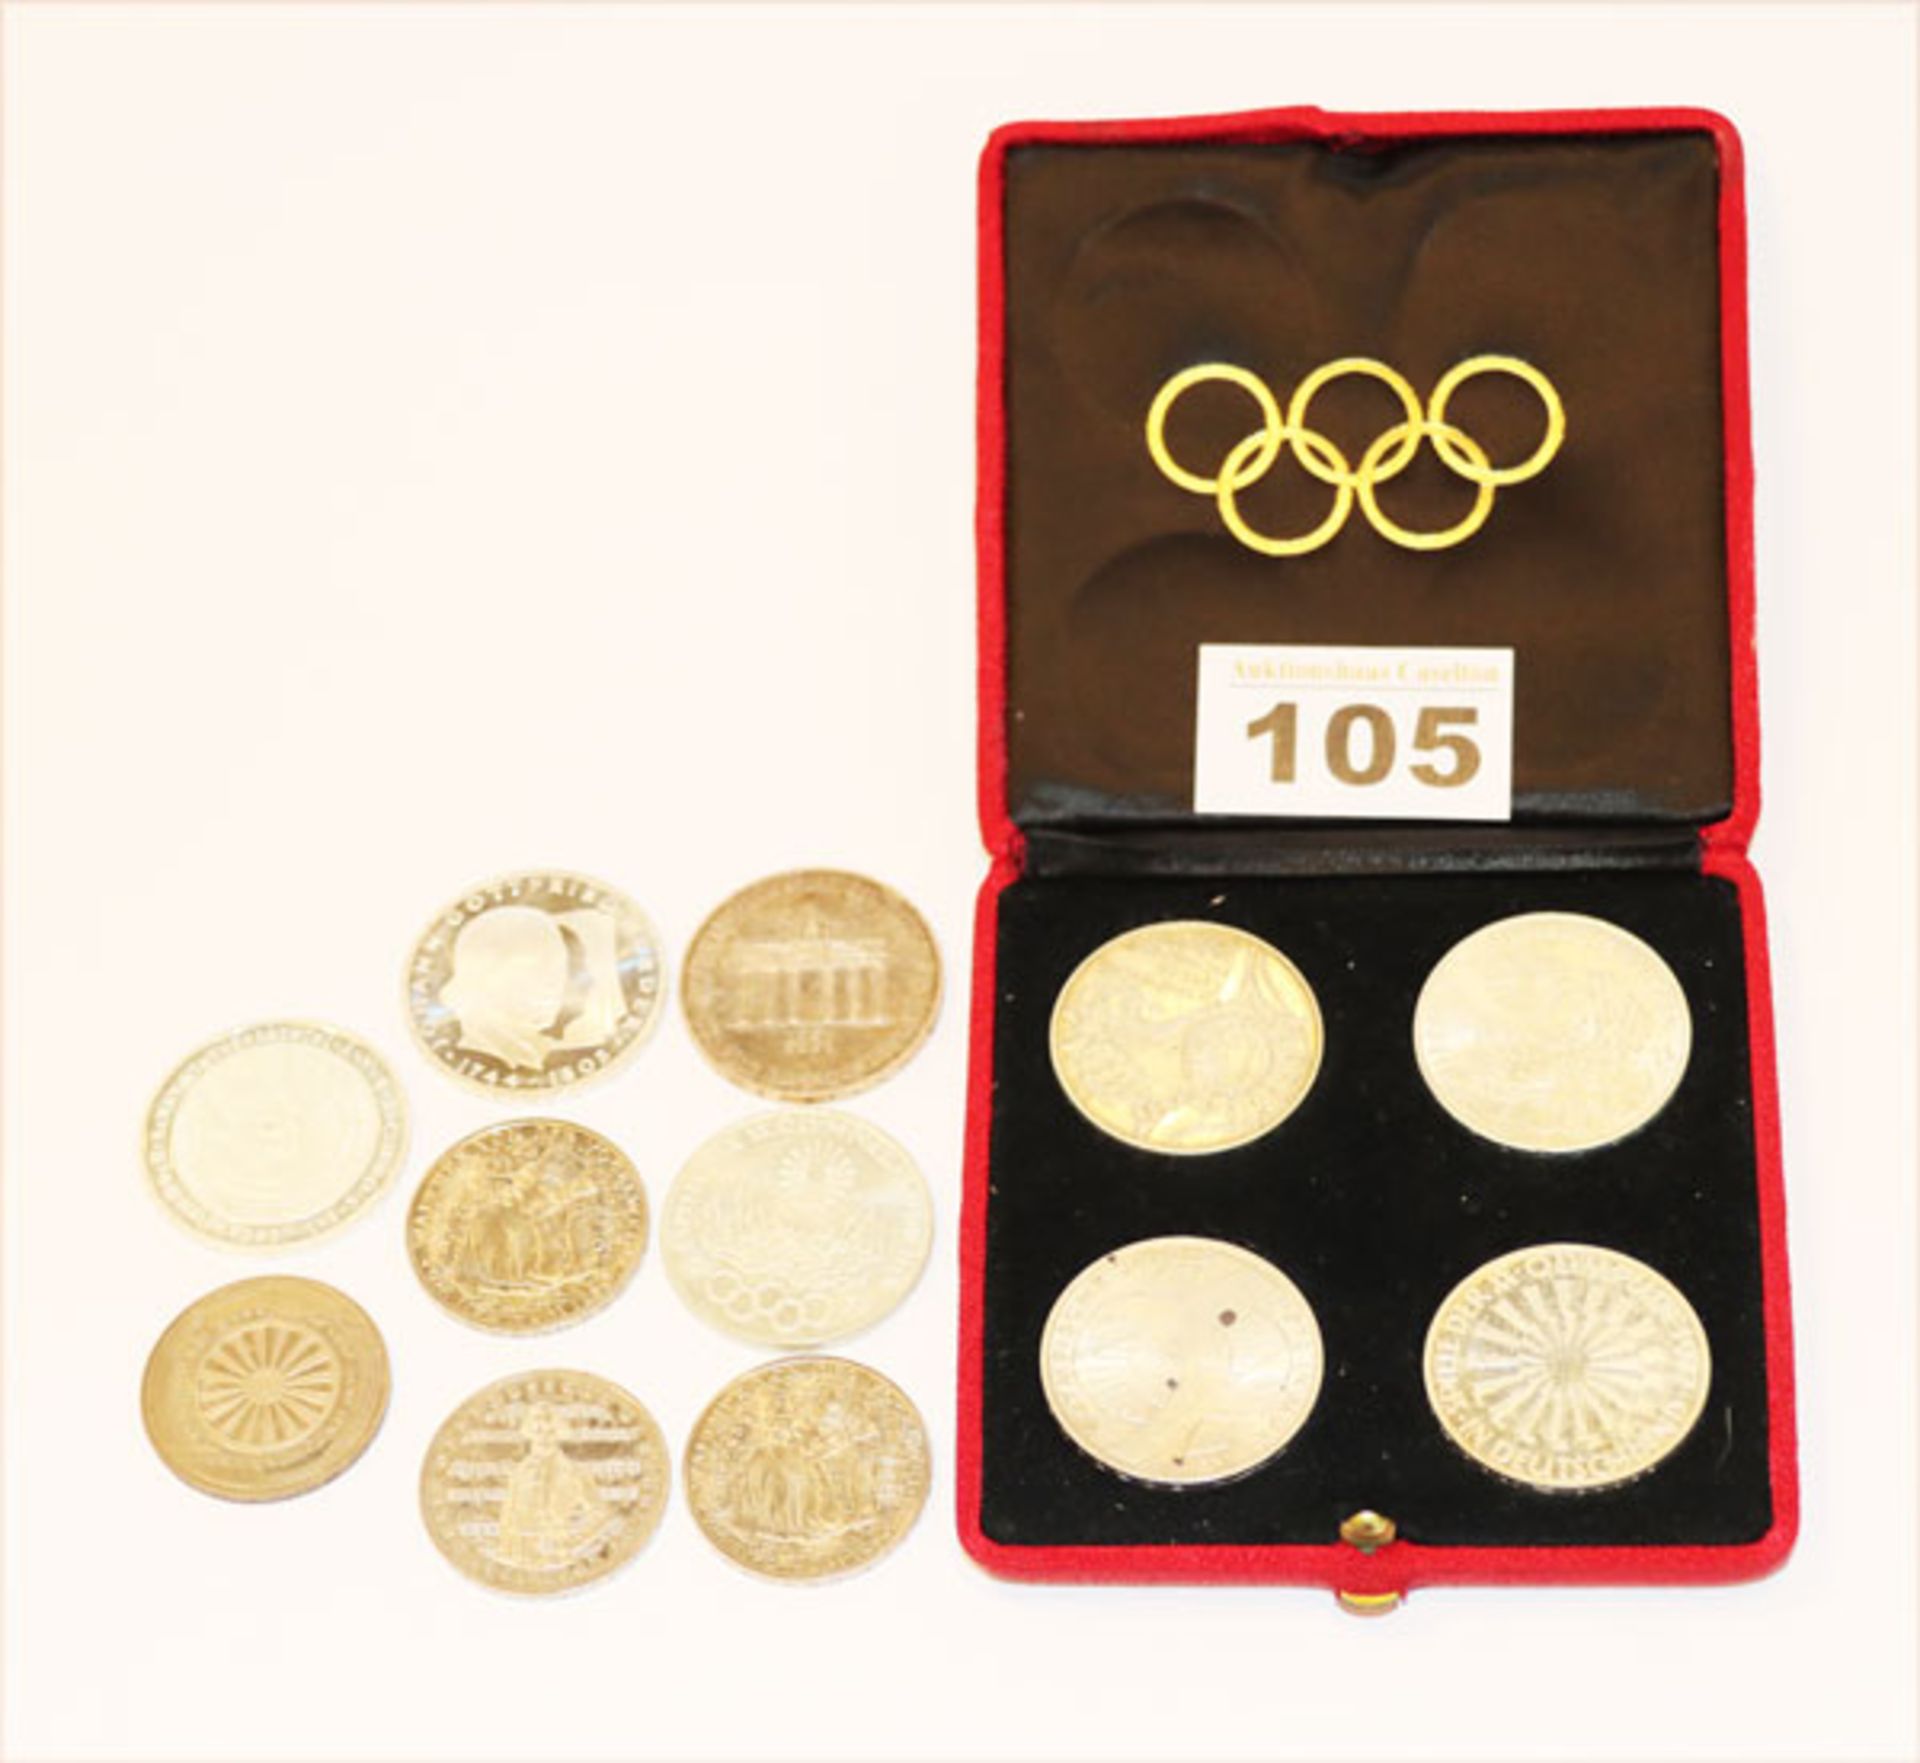 Konvolut: 4 Olympiamünzen 10 Mark München in Etui, und diverse Münzen, 30,-- DM nominal, teils